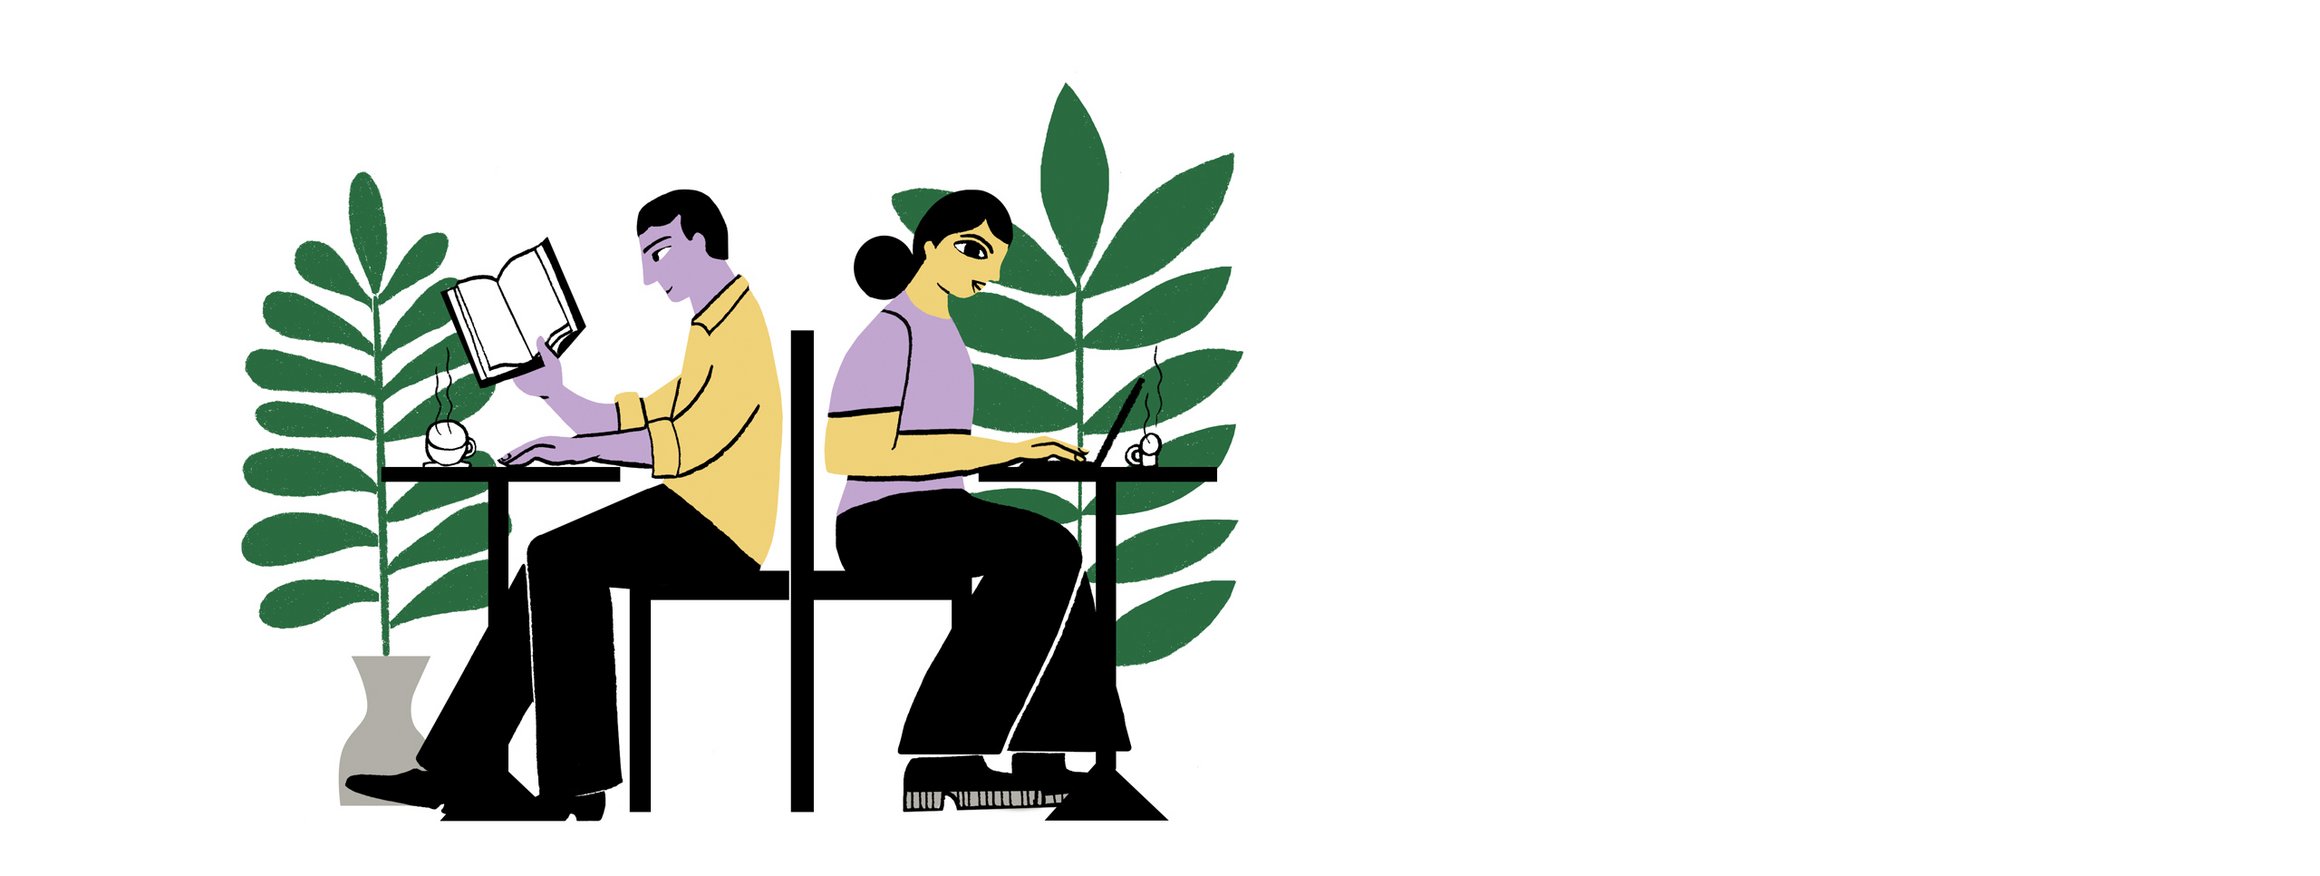 Die Illustration zeigt zwei Personen, die mit dem Rücken zueinander in einem Café sitzen und arbeiten, daneben stehen große Raumpflanzen